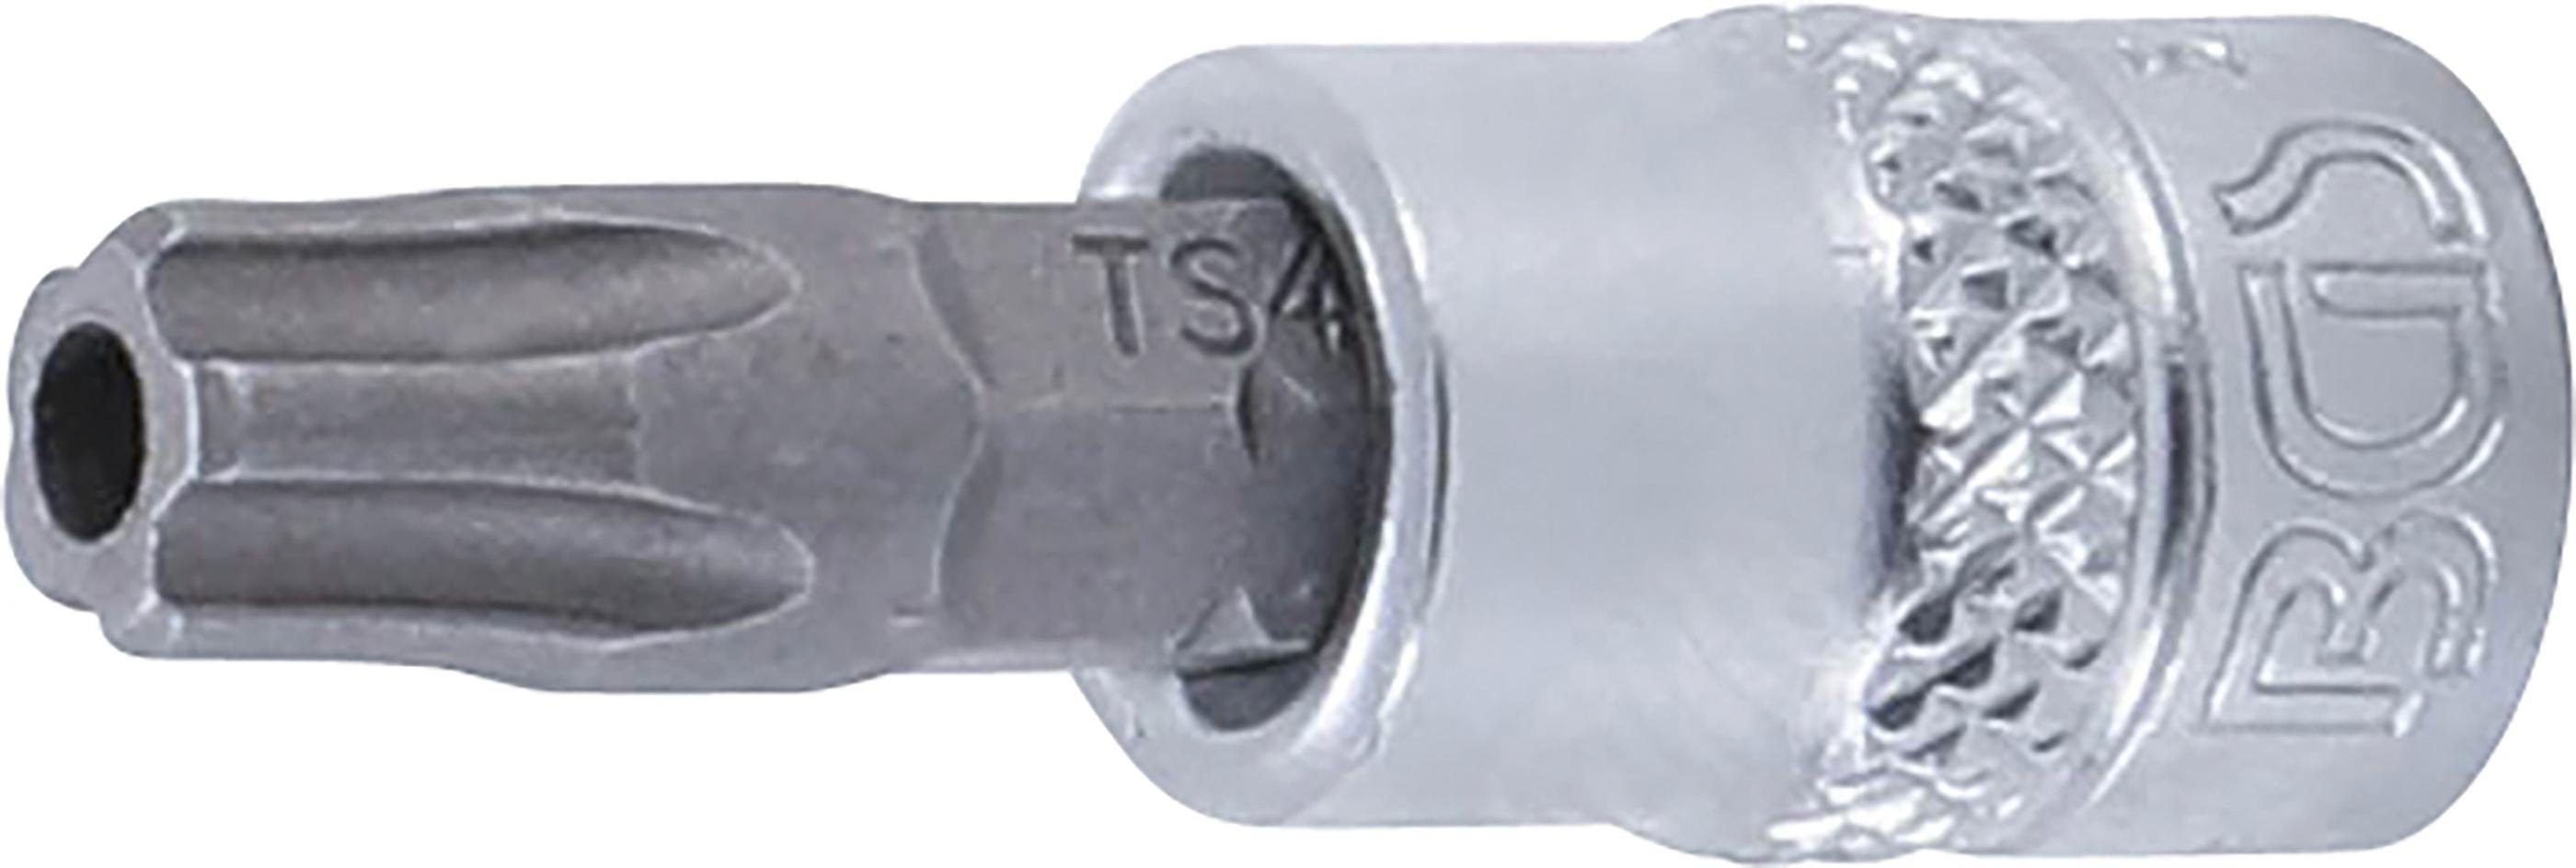 BGS technic Bit-Schraubendreher Bit-Einsatz, Antrieb Innenvierkant 6,3 mm (1/4), TS-Profil (für Torx Plus) mit Bohrung TS40